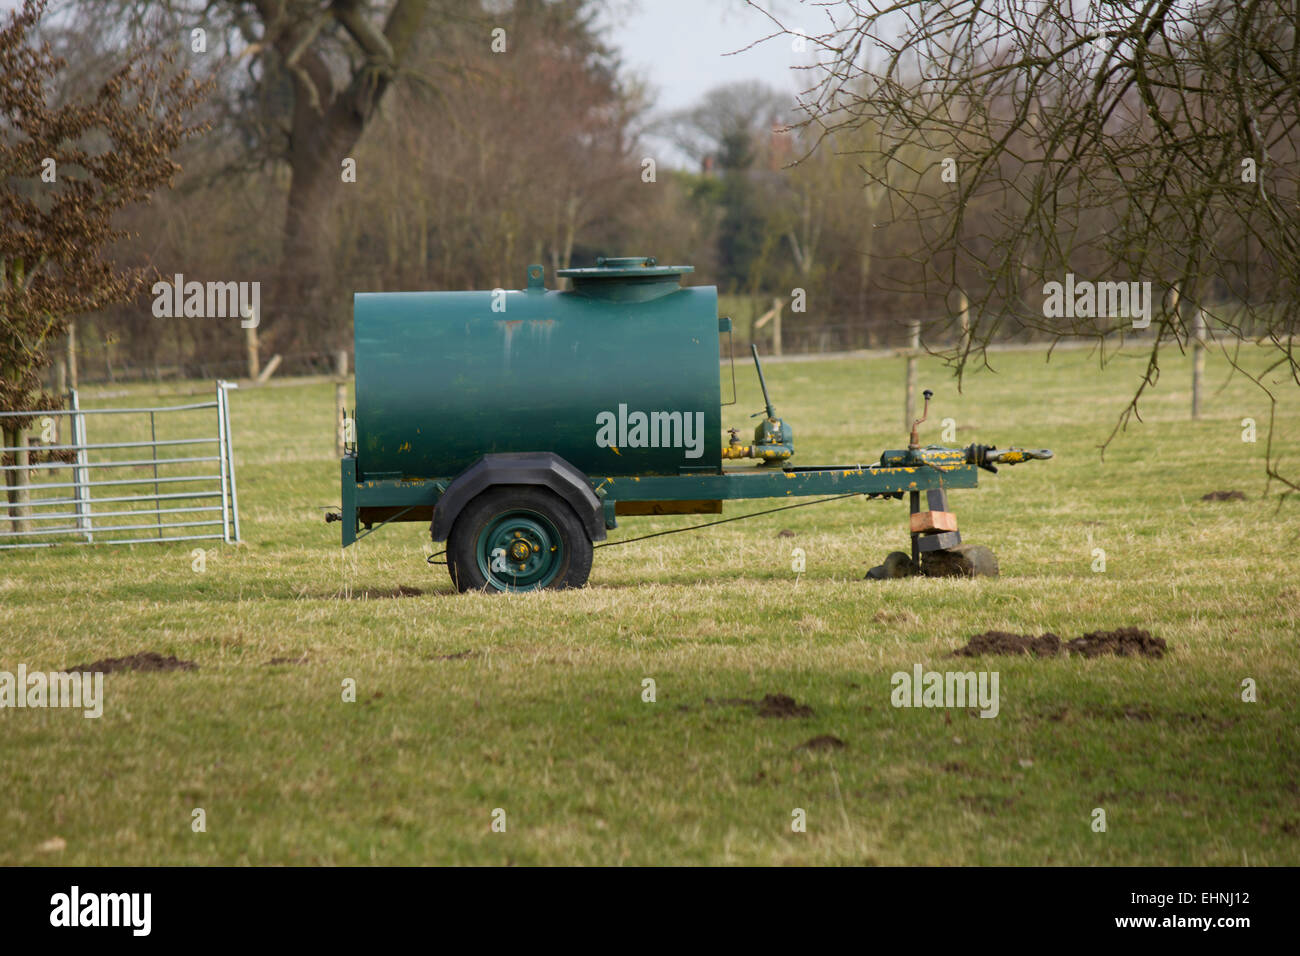 Wasser-Bowser in einem Feld auf einem Bauernhof. Vieh / Tier Wasser Behälter / liefern. Stockfoto